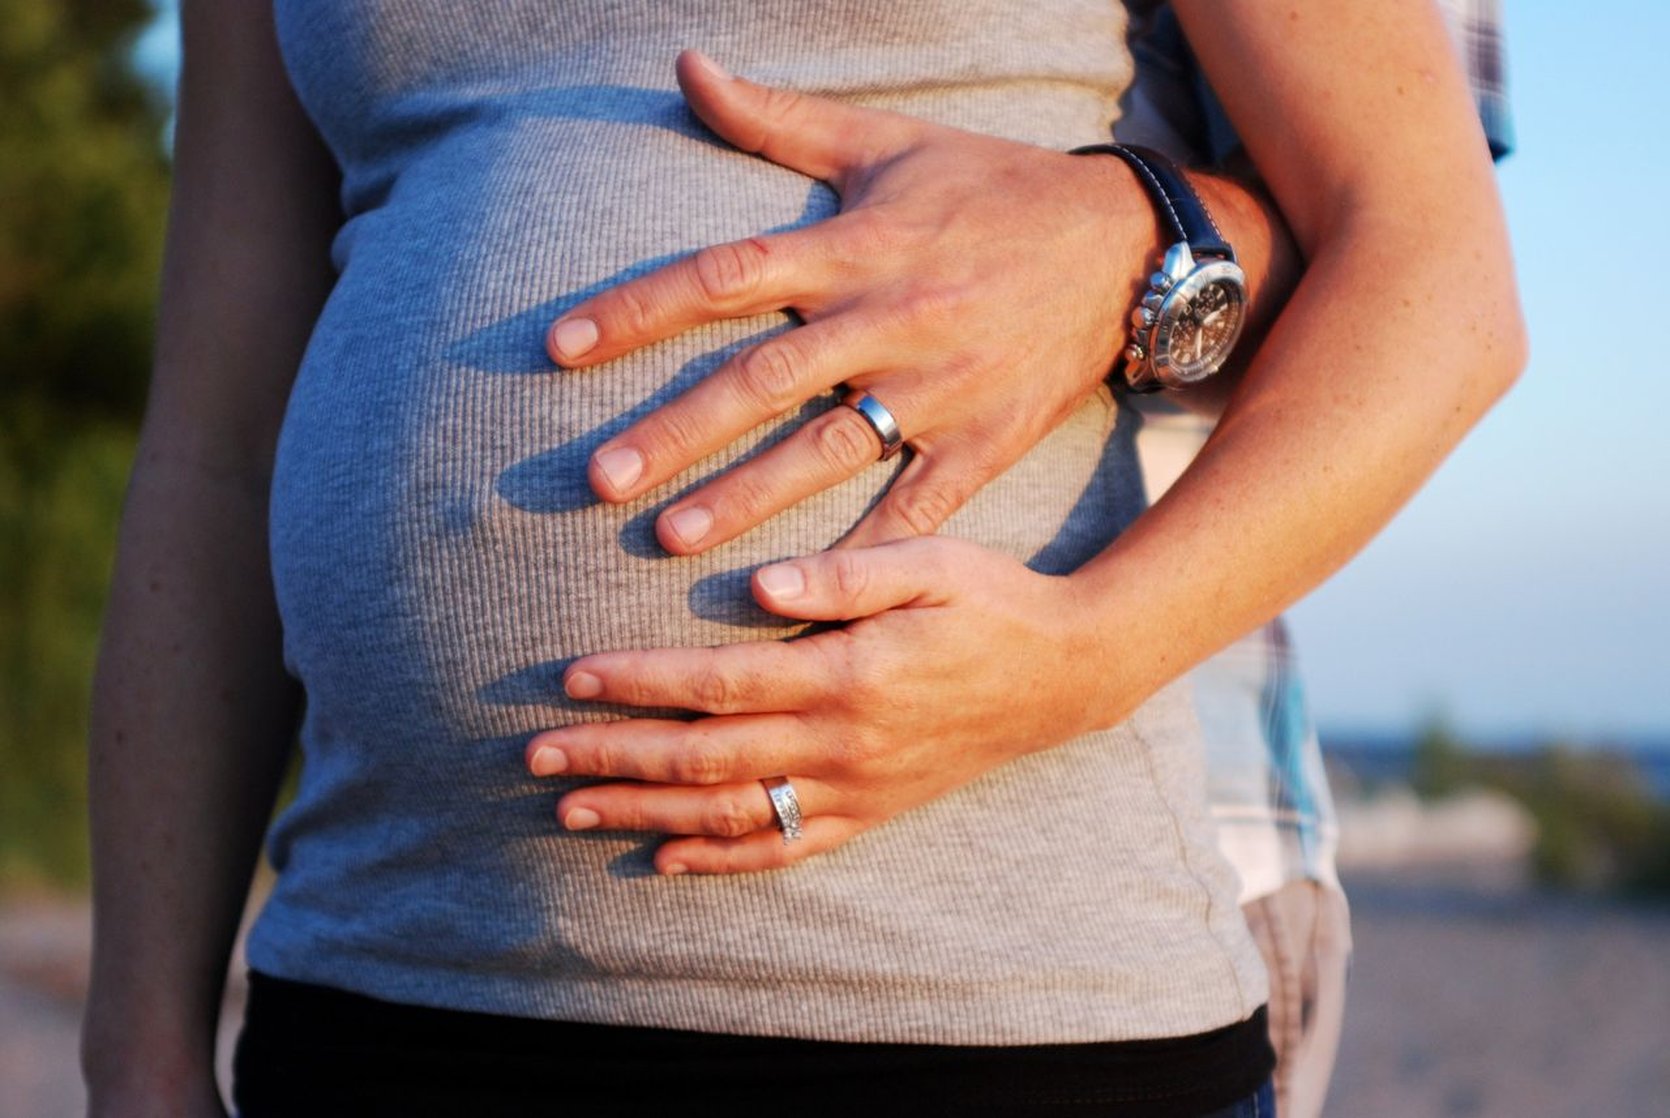 Stoppen-met-roken tijdens zwangerschap versterkt door verloskundigen